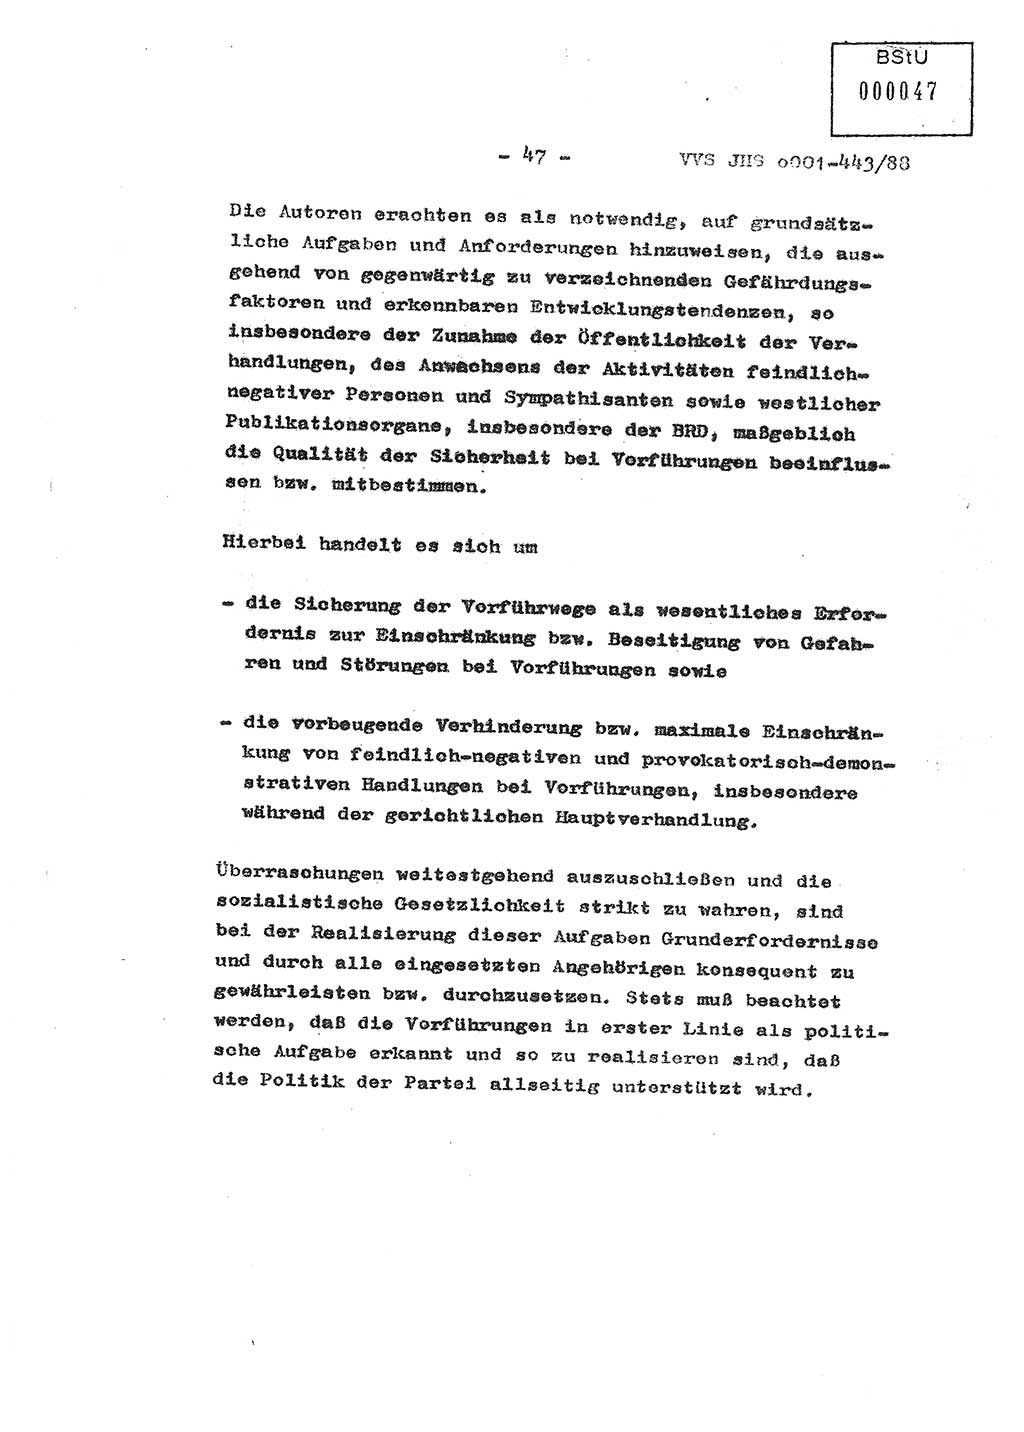 Diplomarbeit Hauptmann Michael Rast (Abt. ⅩⅣ), Major Bernd Rahaus (Abt. ⅩⅣ), Ministerium für Staatssicherheit (MfS) [Deutsche Demokratische Republik (DDR)], Juristische Hochschule (JHS), Vertrauliche Verschlußsache (VVS) o001-443/88, Potsdam 1988, Seite 47 (Dipl.-Arb. MfS DDR JHS VVS o001-443/88 1988, S. 47)